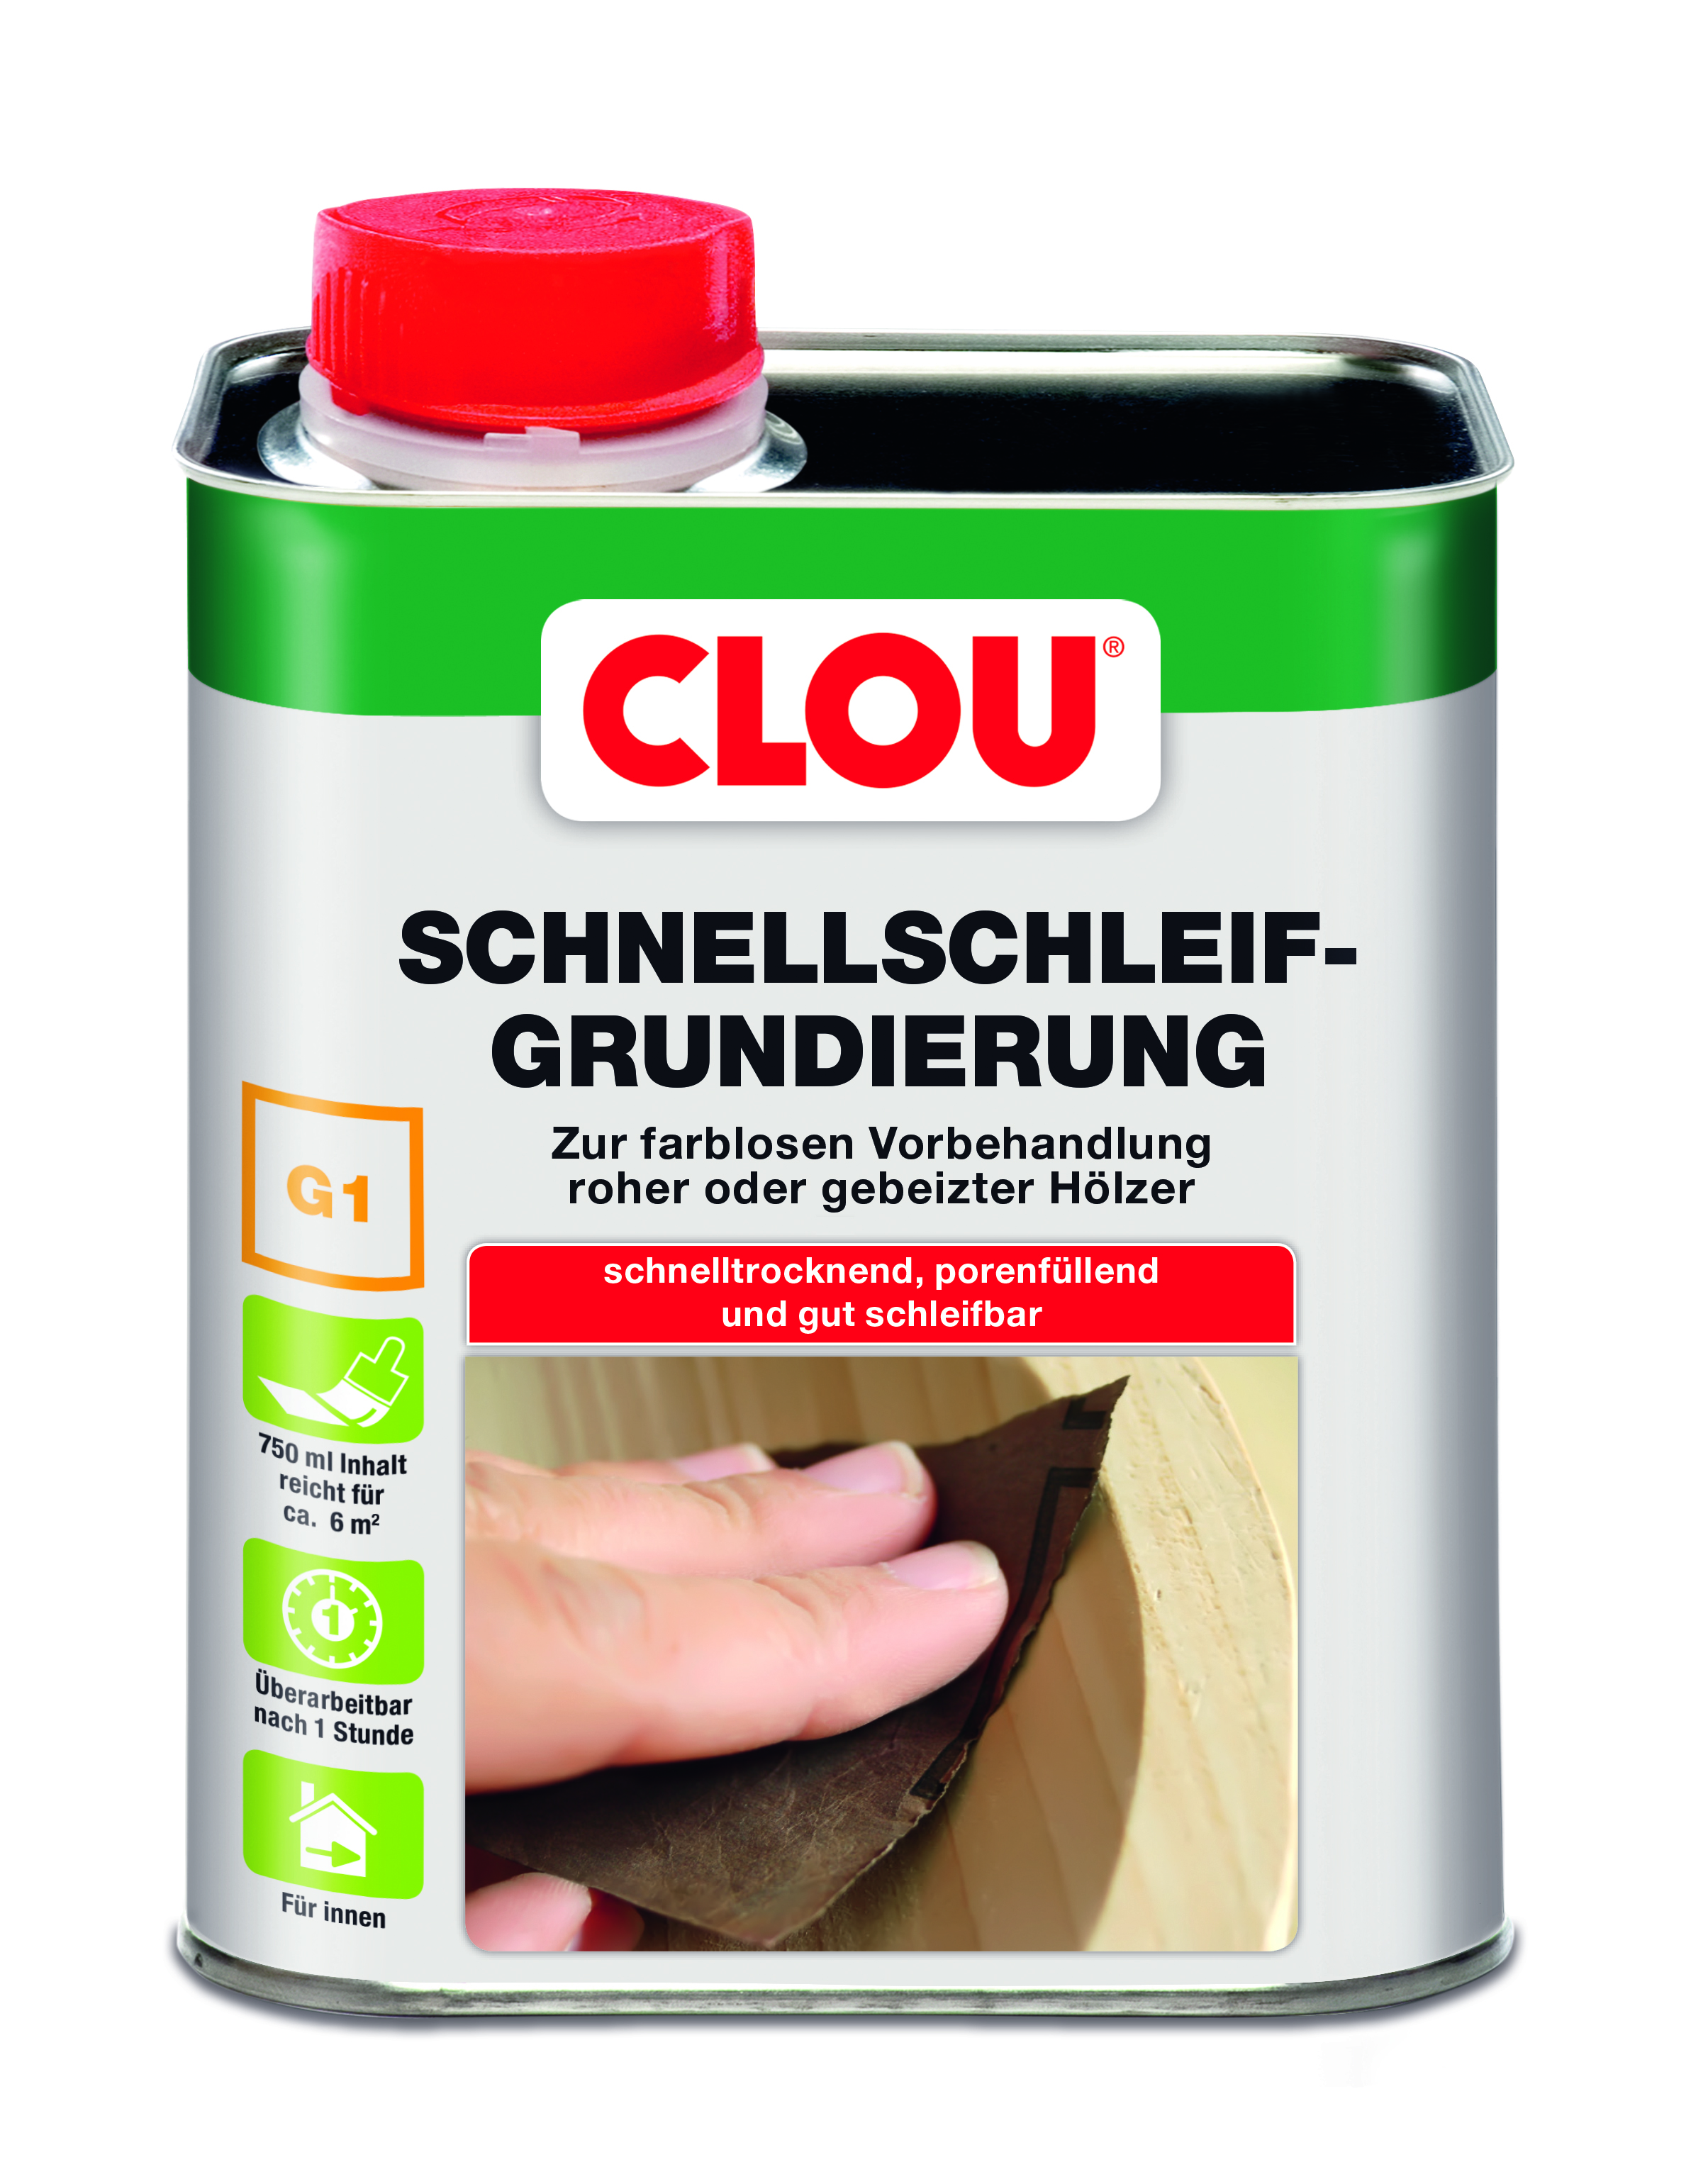 CLOU Schnellschleif-Grundierung G1, 750 ml